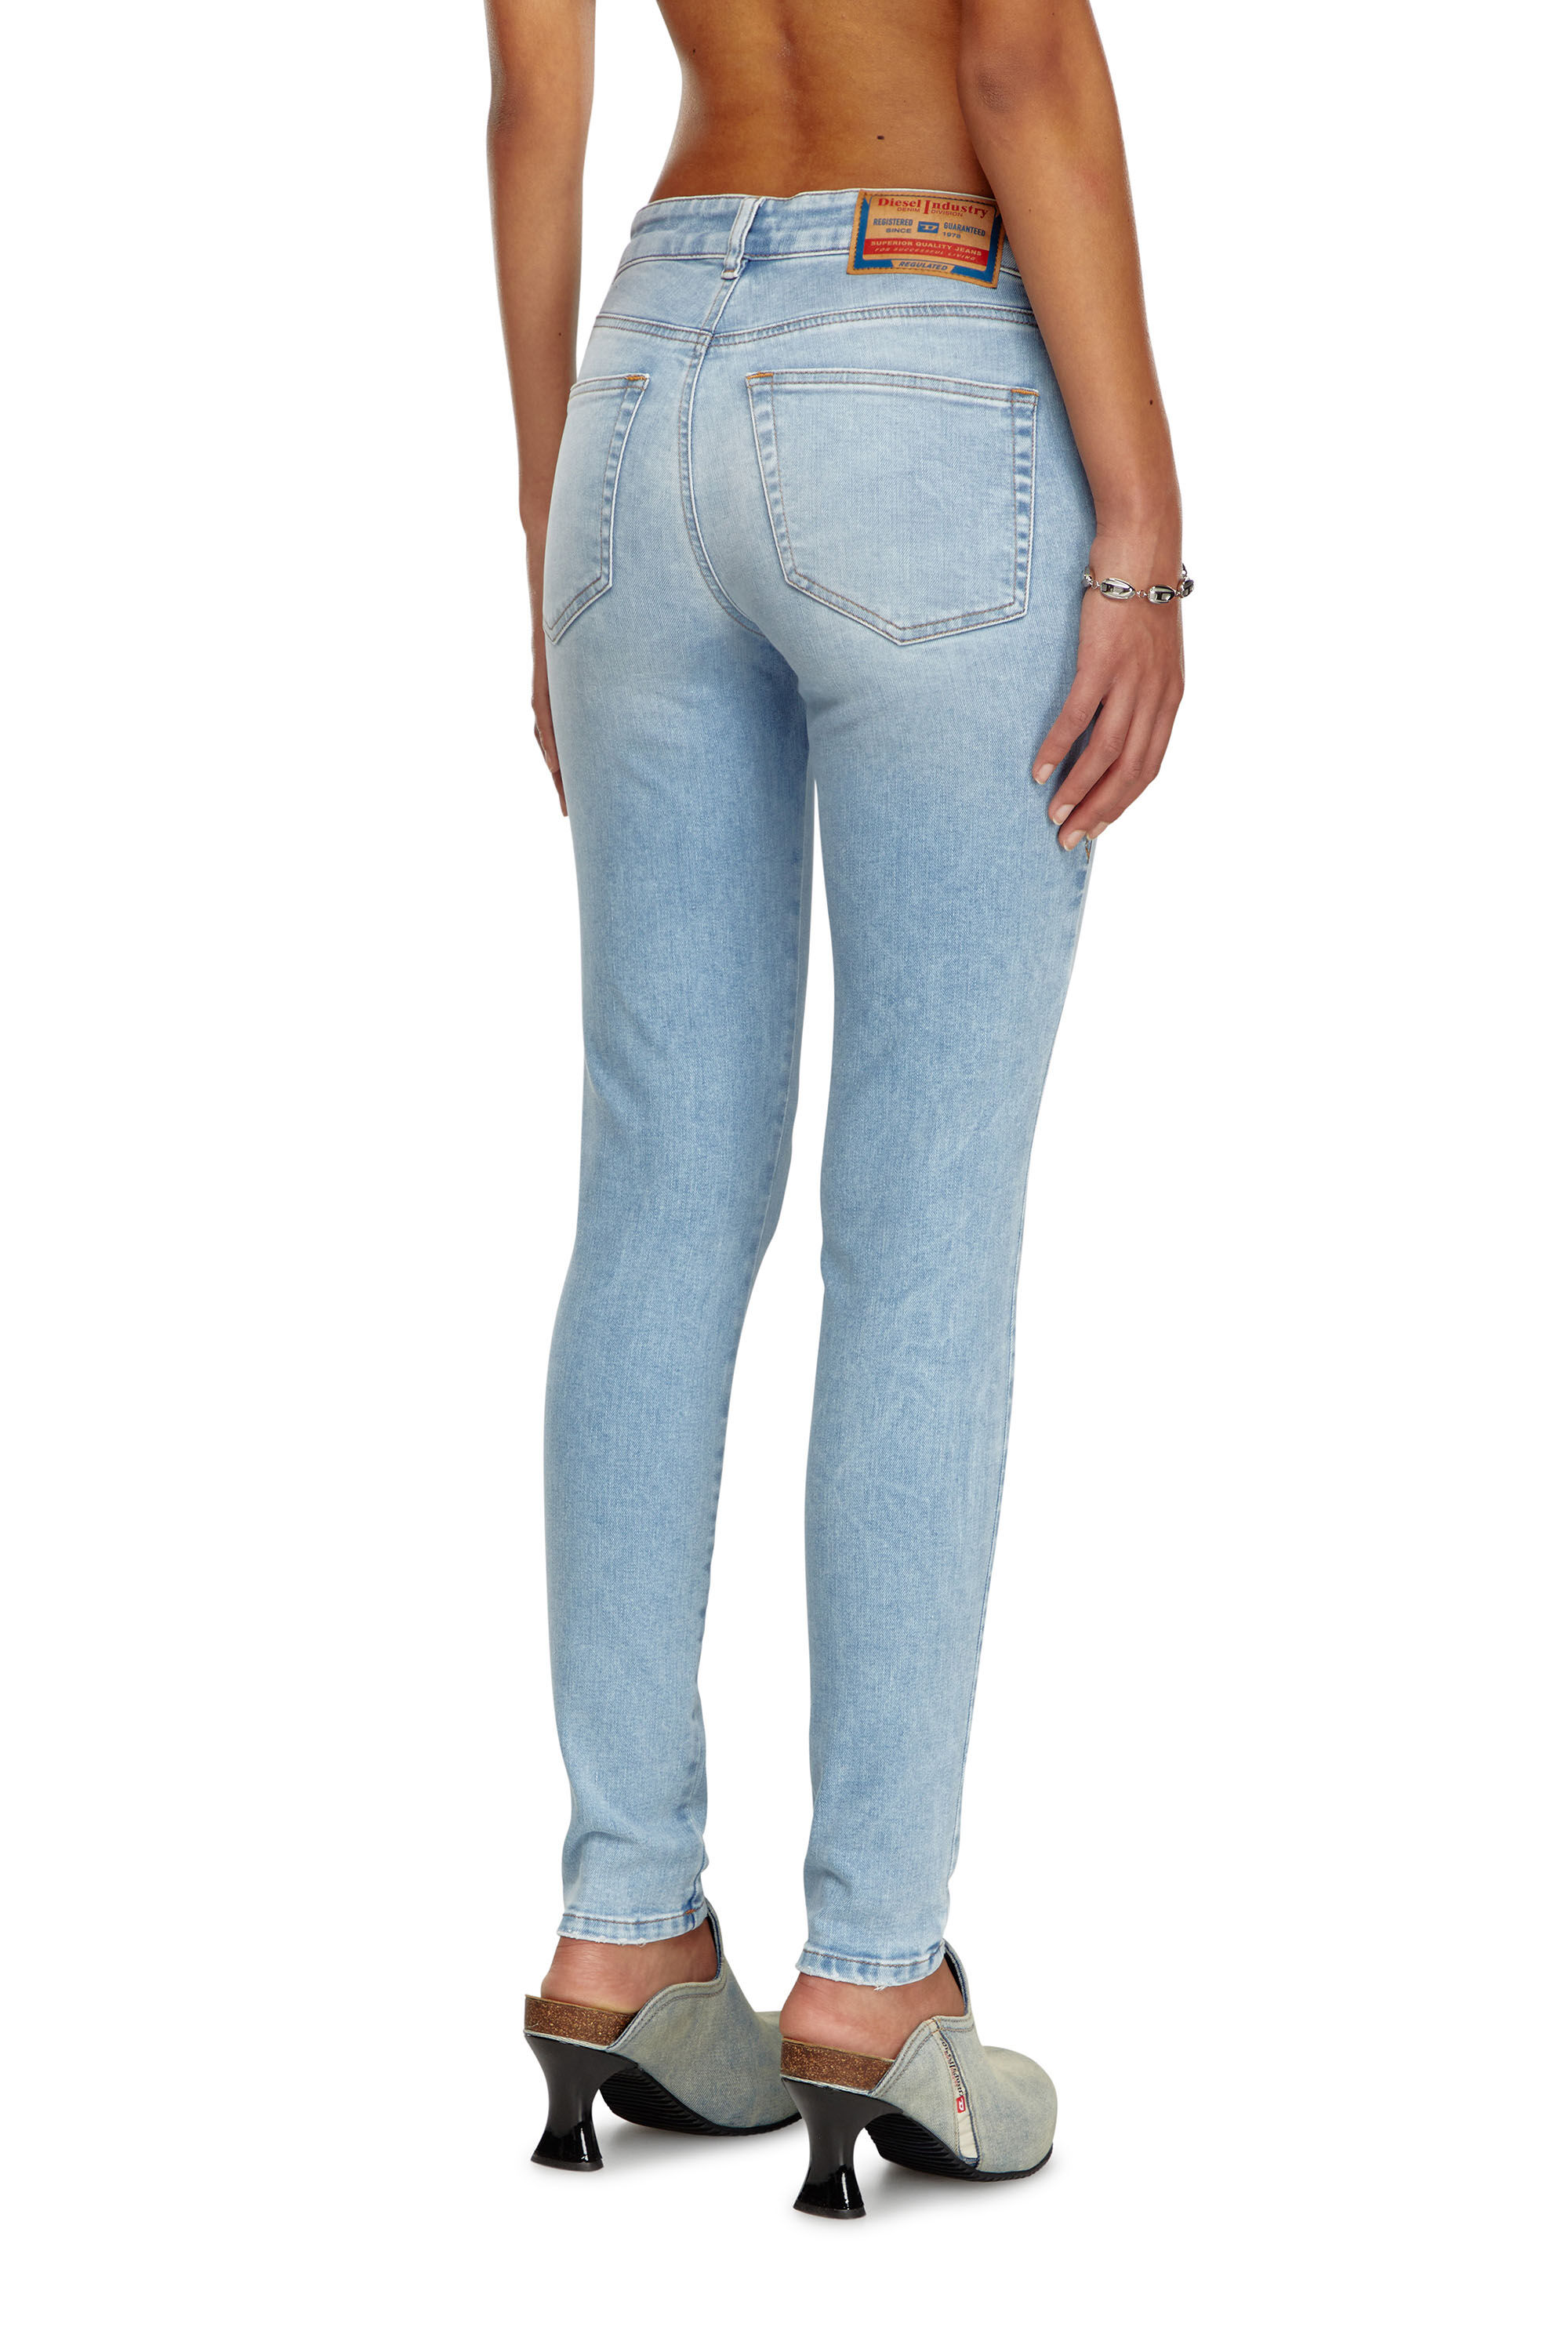 Diesel - Super skinny Jeans 2017 Slandy 09J13, Mujer Super skinny Jeans - 2017 Slandy in Azul marino - Image 4